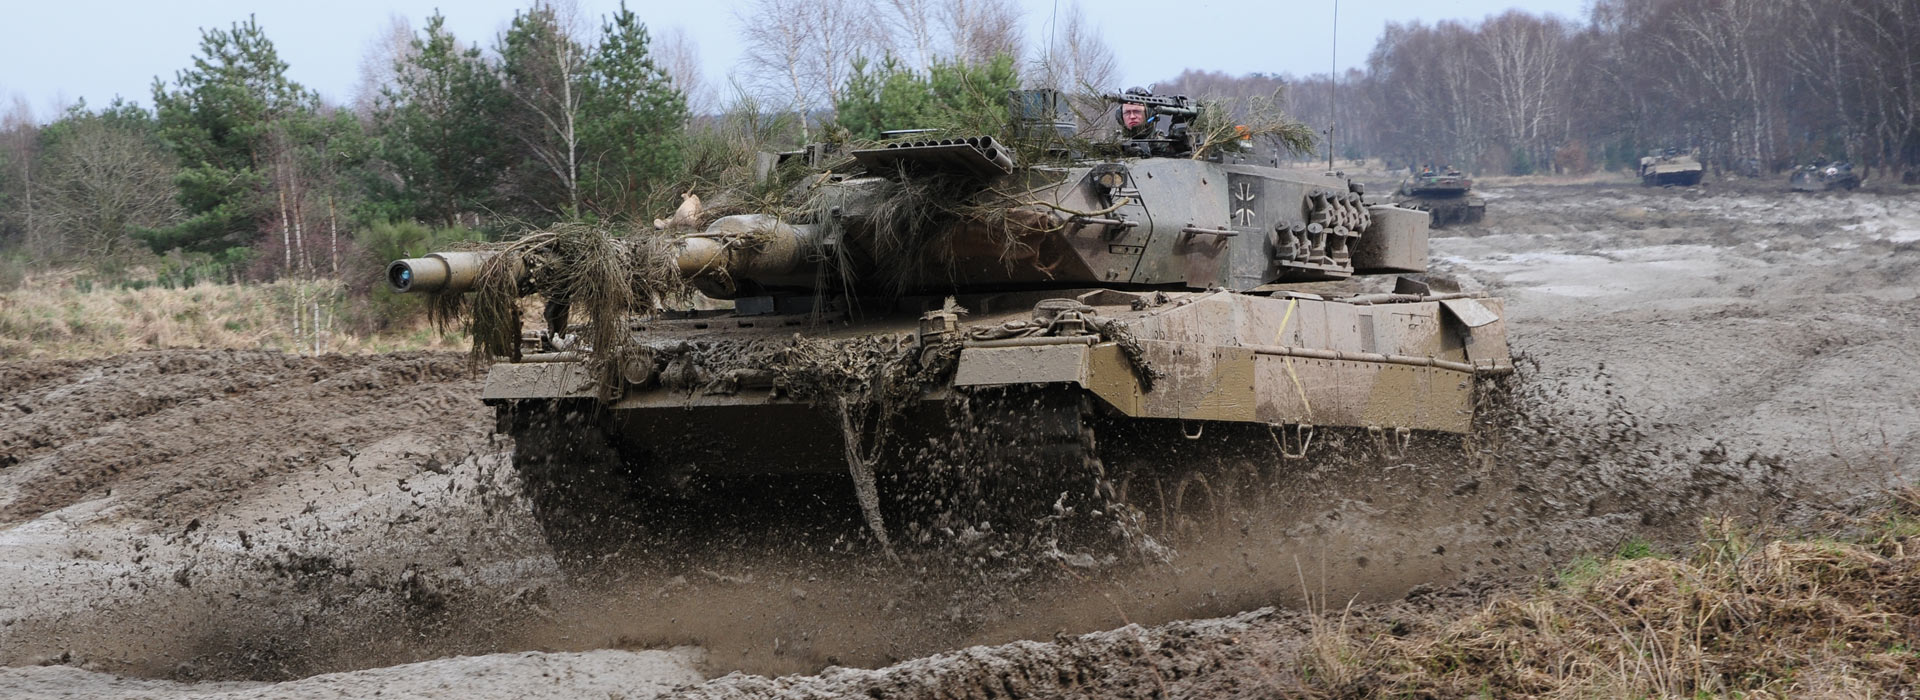 Leopard-2-A6-KMW-003